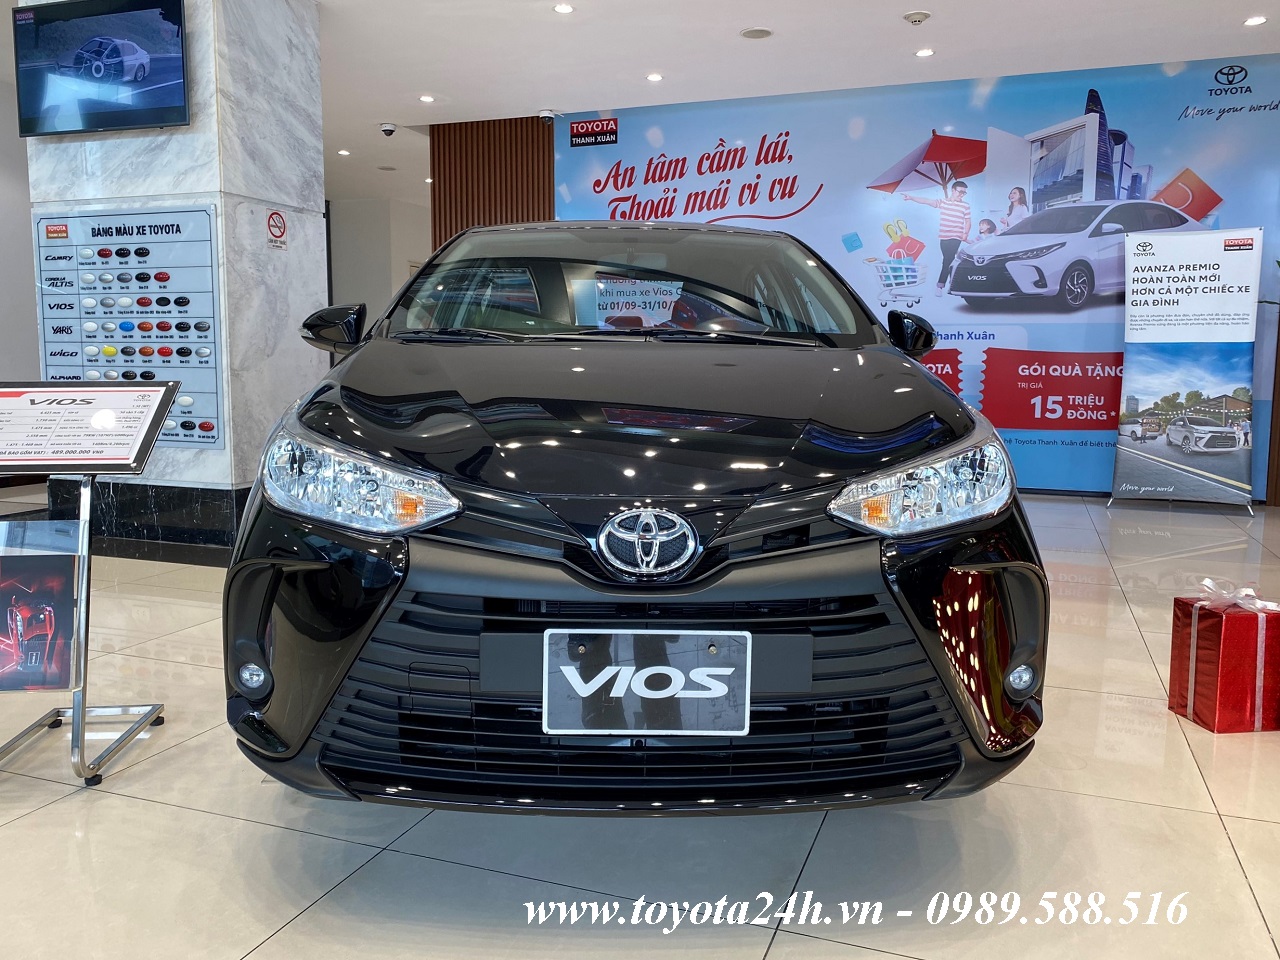 Toyota Vios Số Sàn 2023 Màu Đen | Hình ảnh | Bảng Giá Xe Lăn Bánh Phiên Bản Mới Nhất Hôm Nay